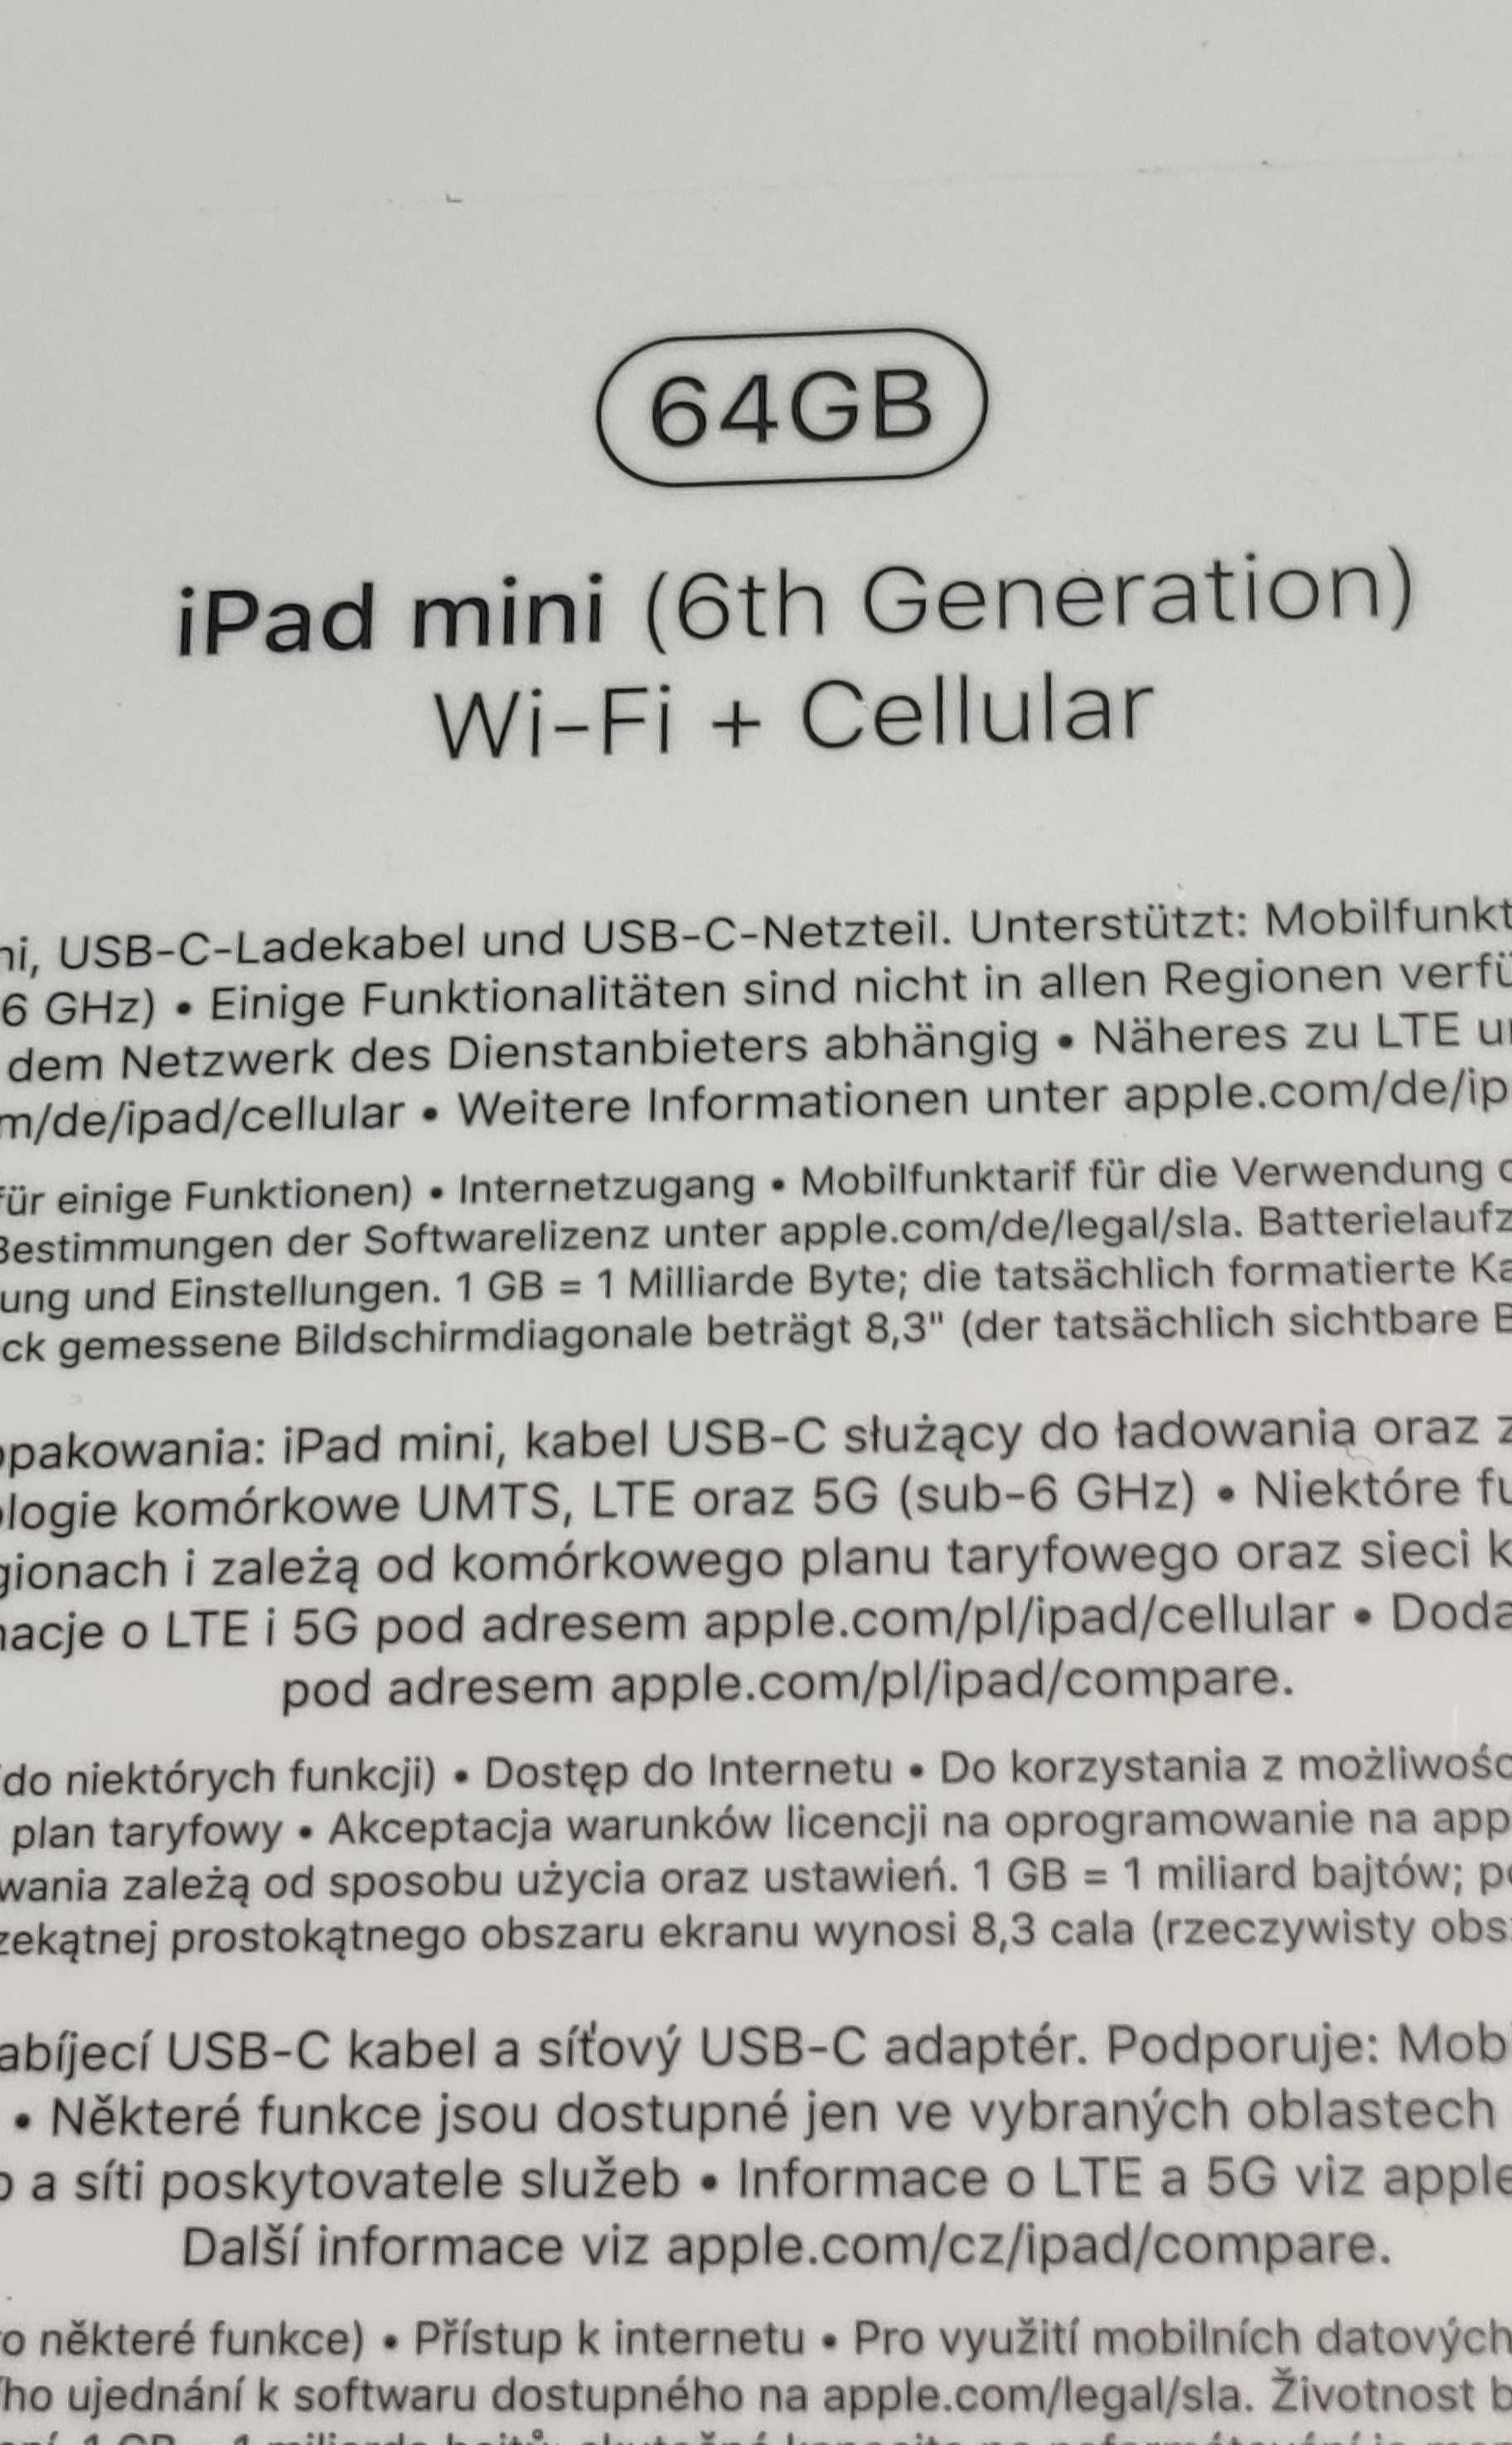 NOWY iPad Mini 6gen 64GB 5G,Idealny na Komunię,WI-FI + LTE 5G,USB-C